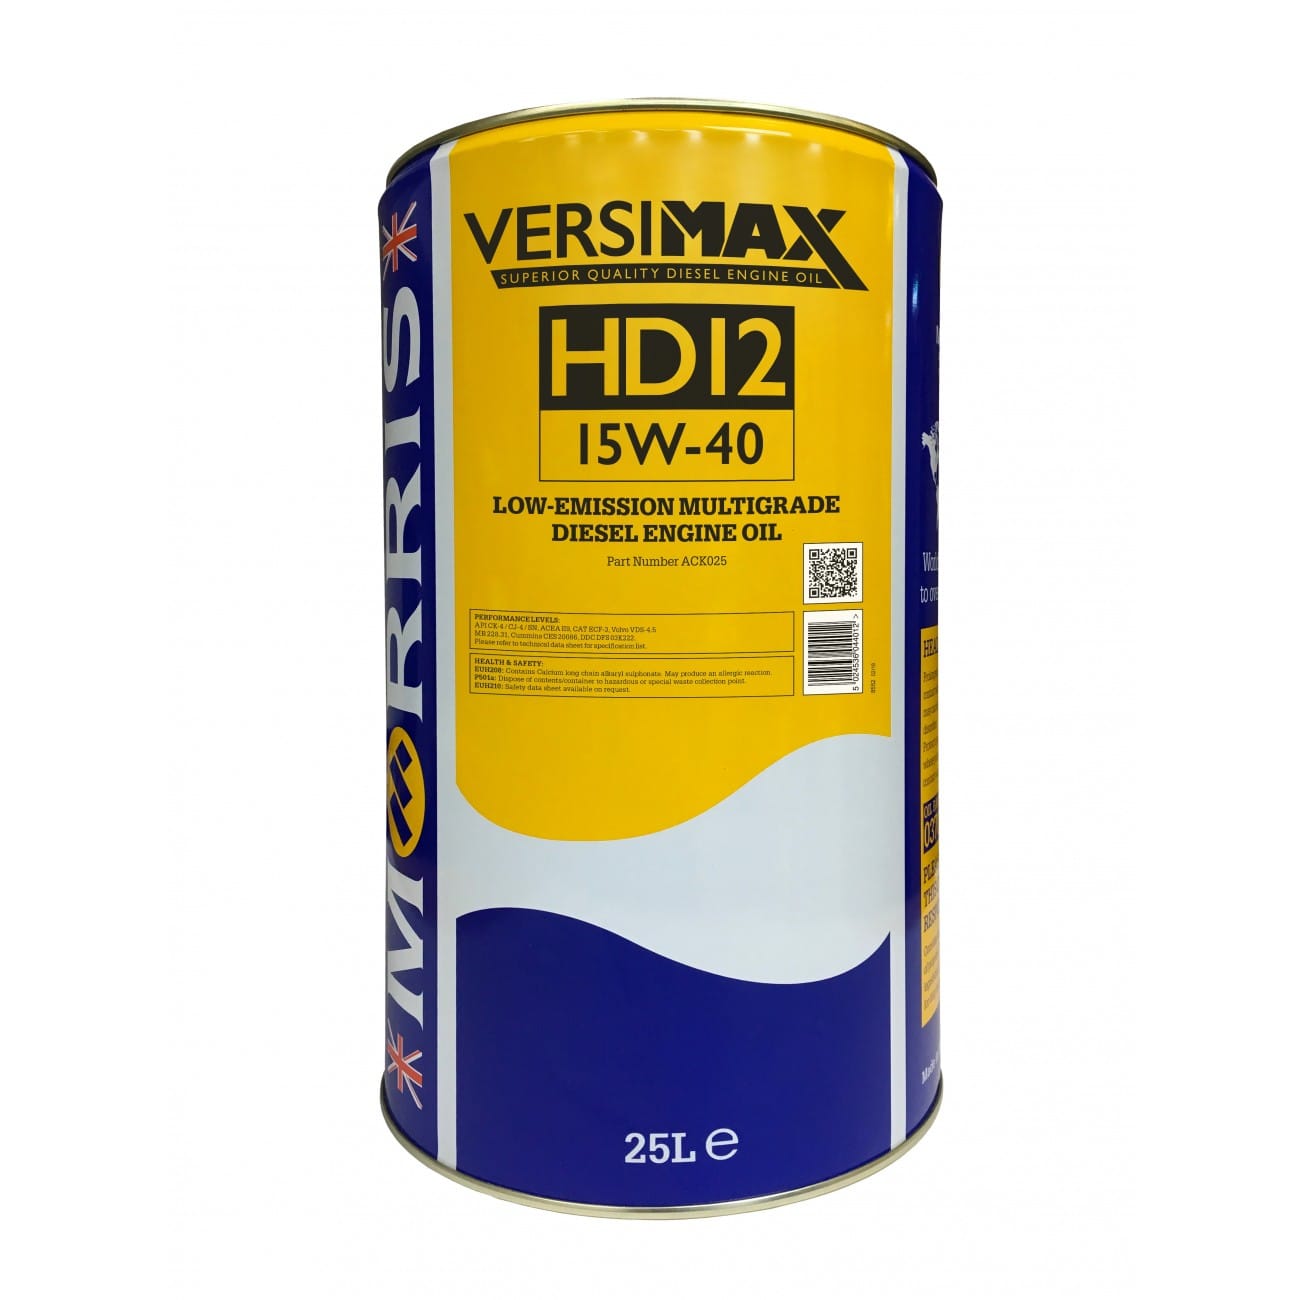 Versimax HD12 15W-40